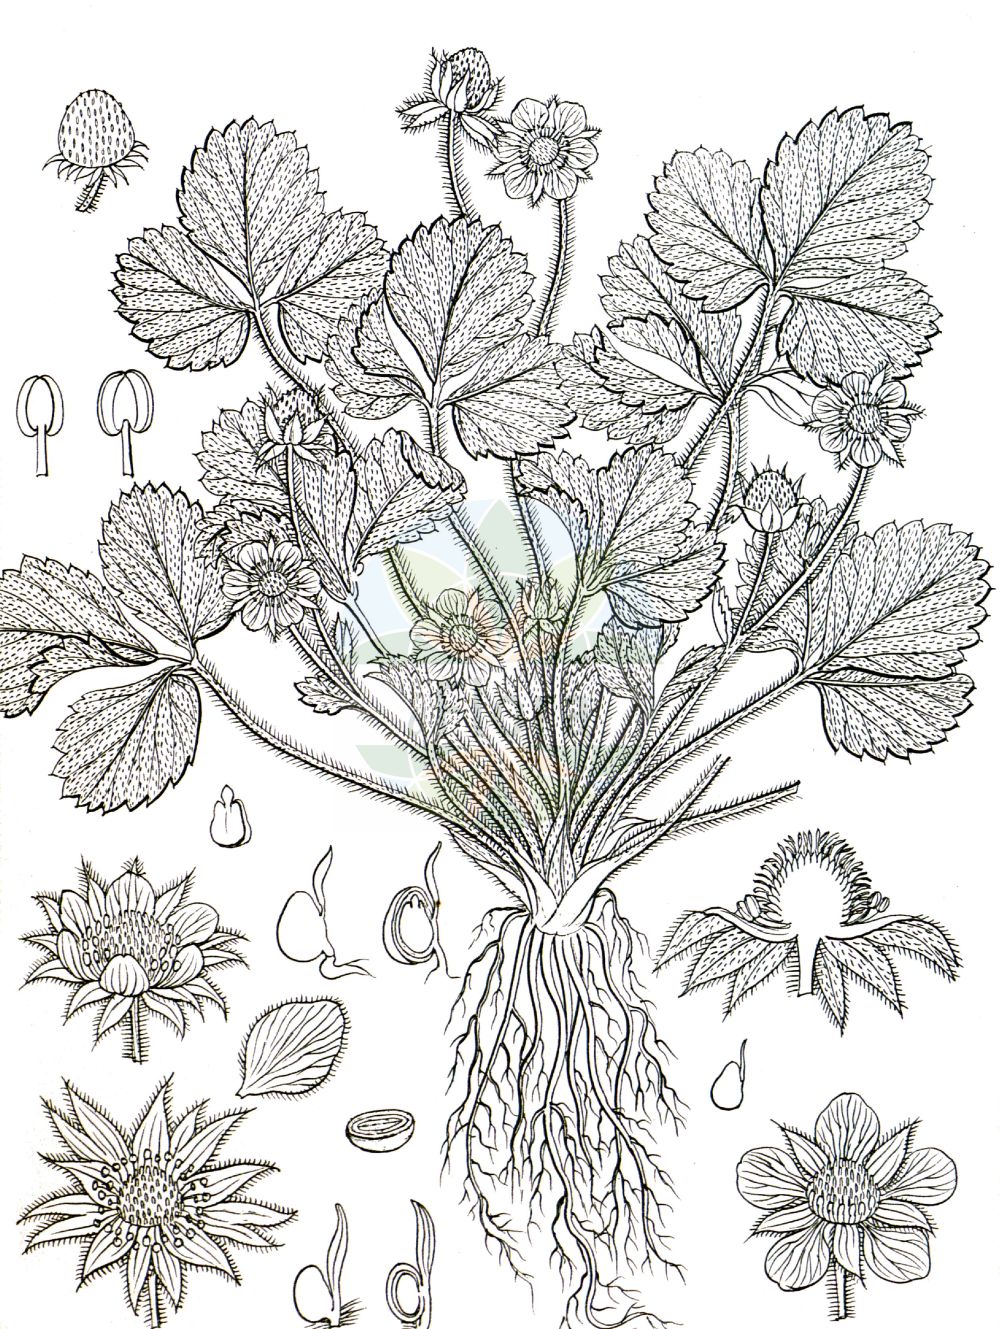 Historische Abbildung von Fragaria moschata (Zimt-Erdbeere - Hautbois Strawberry). Das Bild zeigt Blatt, Bluete, Frucht und Same. ---- Historical Drawing of Fragaria moschata (Zimt-Erdbeere - Hautbois Strawberry). The image is showing leaf, flower, fruit and seed.(Fragaria moschata,Zimt-Erdbeere,Hautbois Strawberry,Fragaria elatior,Fragaria magna,Fragaria moschata,Fragaria pratensis,Fragaria reversa,Potentilla moschata,Zimt-Erdbeere,Grosse Erdbeere,Hautbois Strawberry,Fragaria,Erdbeere,Strawberry,Rosaceae,Rosengewächse,Rose family,Blatt,Bluete,Frucht,Same,leaf,flower,fruit,seed,Wight (1840-1850))